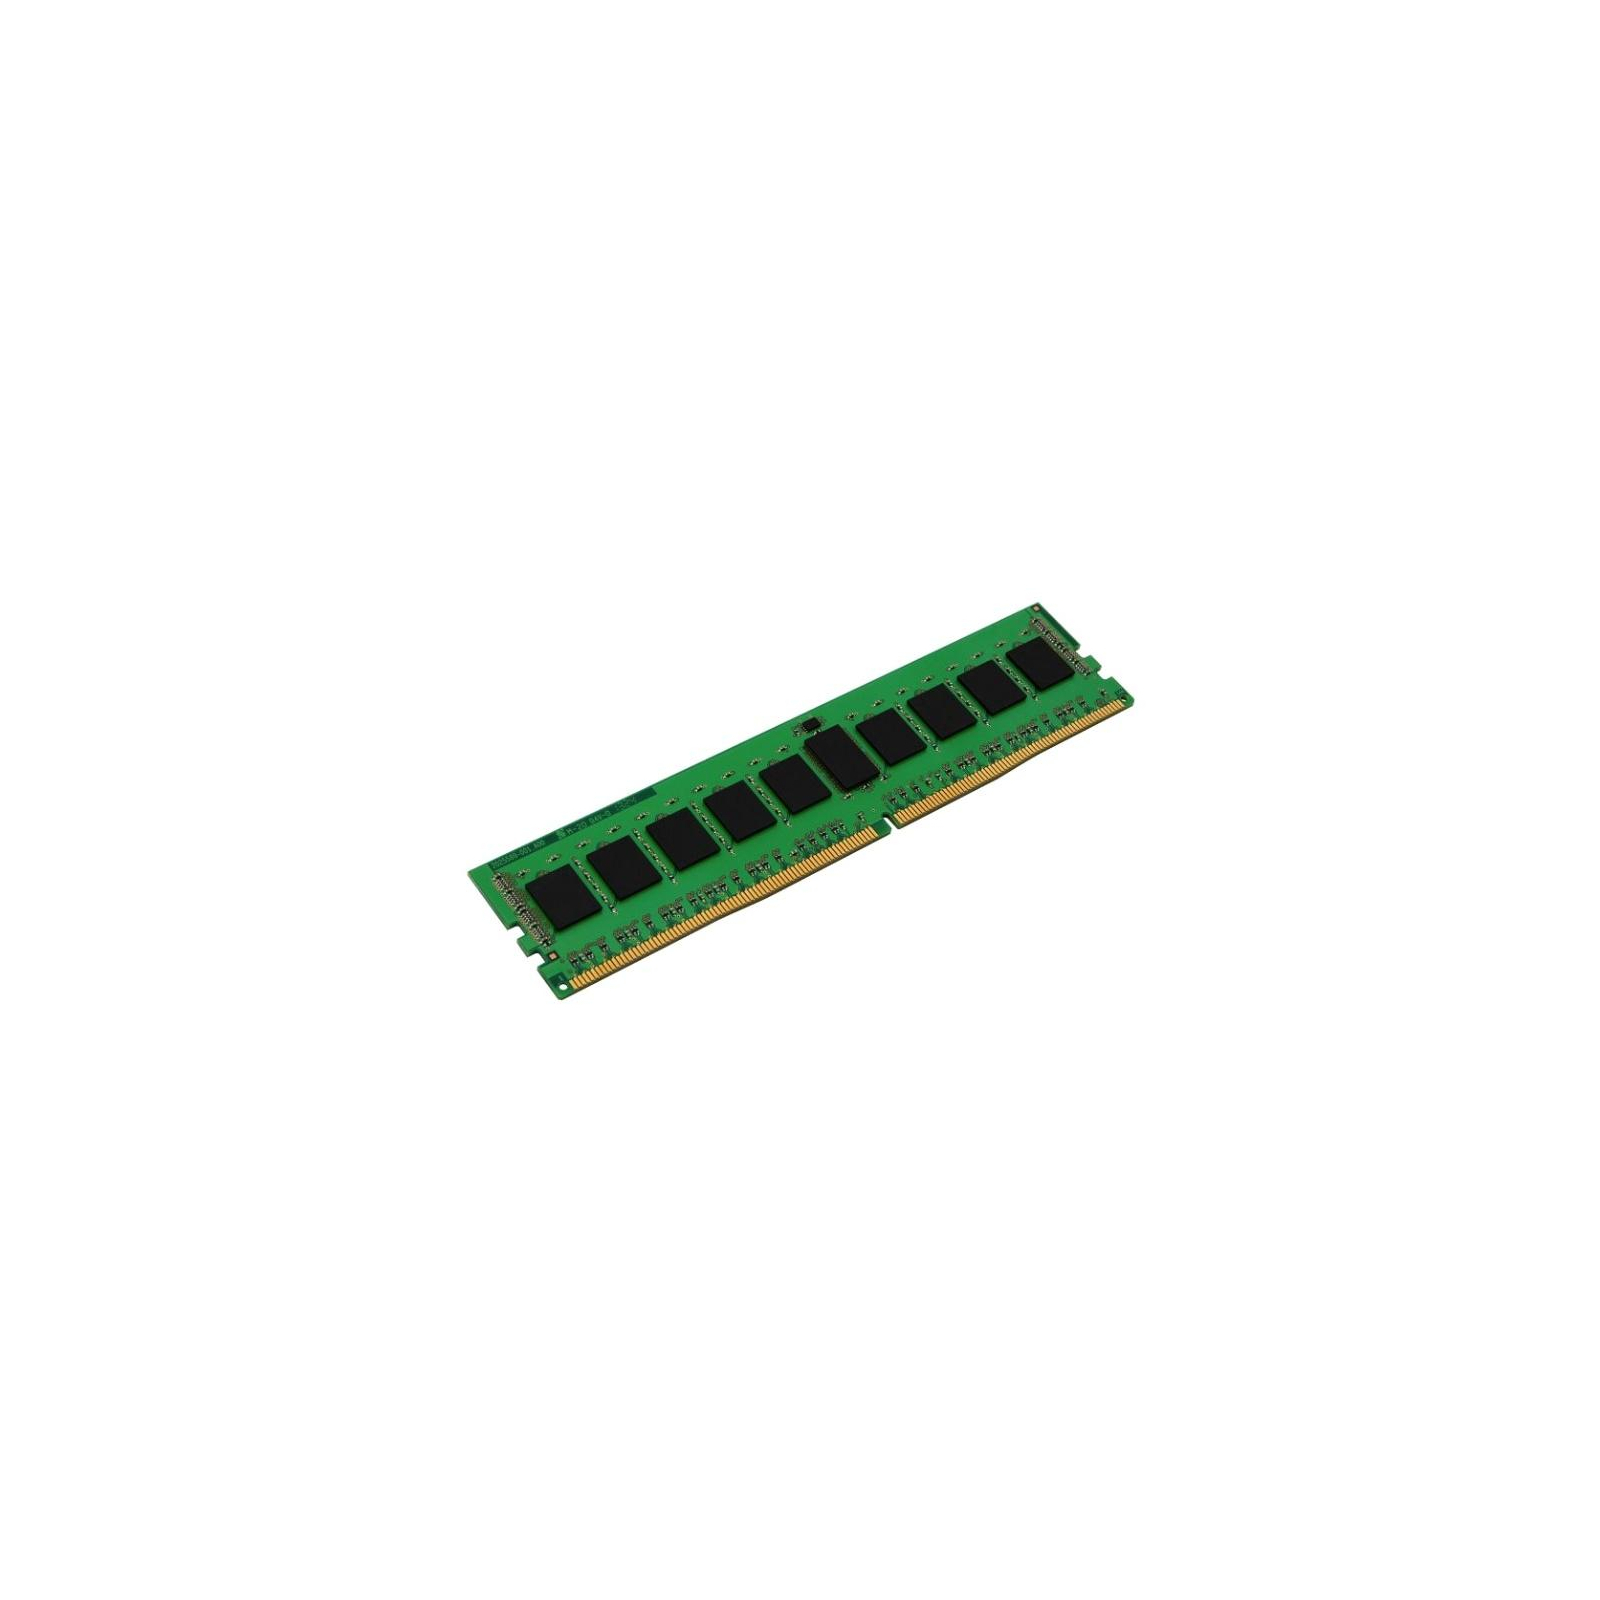 Модуль памяти для сервера DDR4 8GB ECC RDIMM 2400MHz 1Rx4 1.2V CL17 Kingston (KVR24R17S4/8)